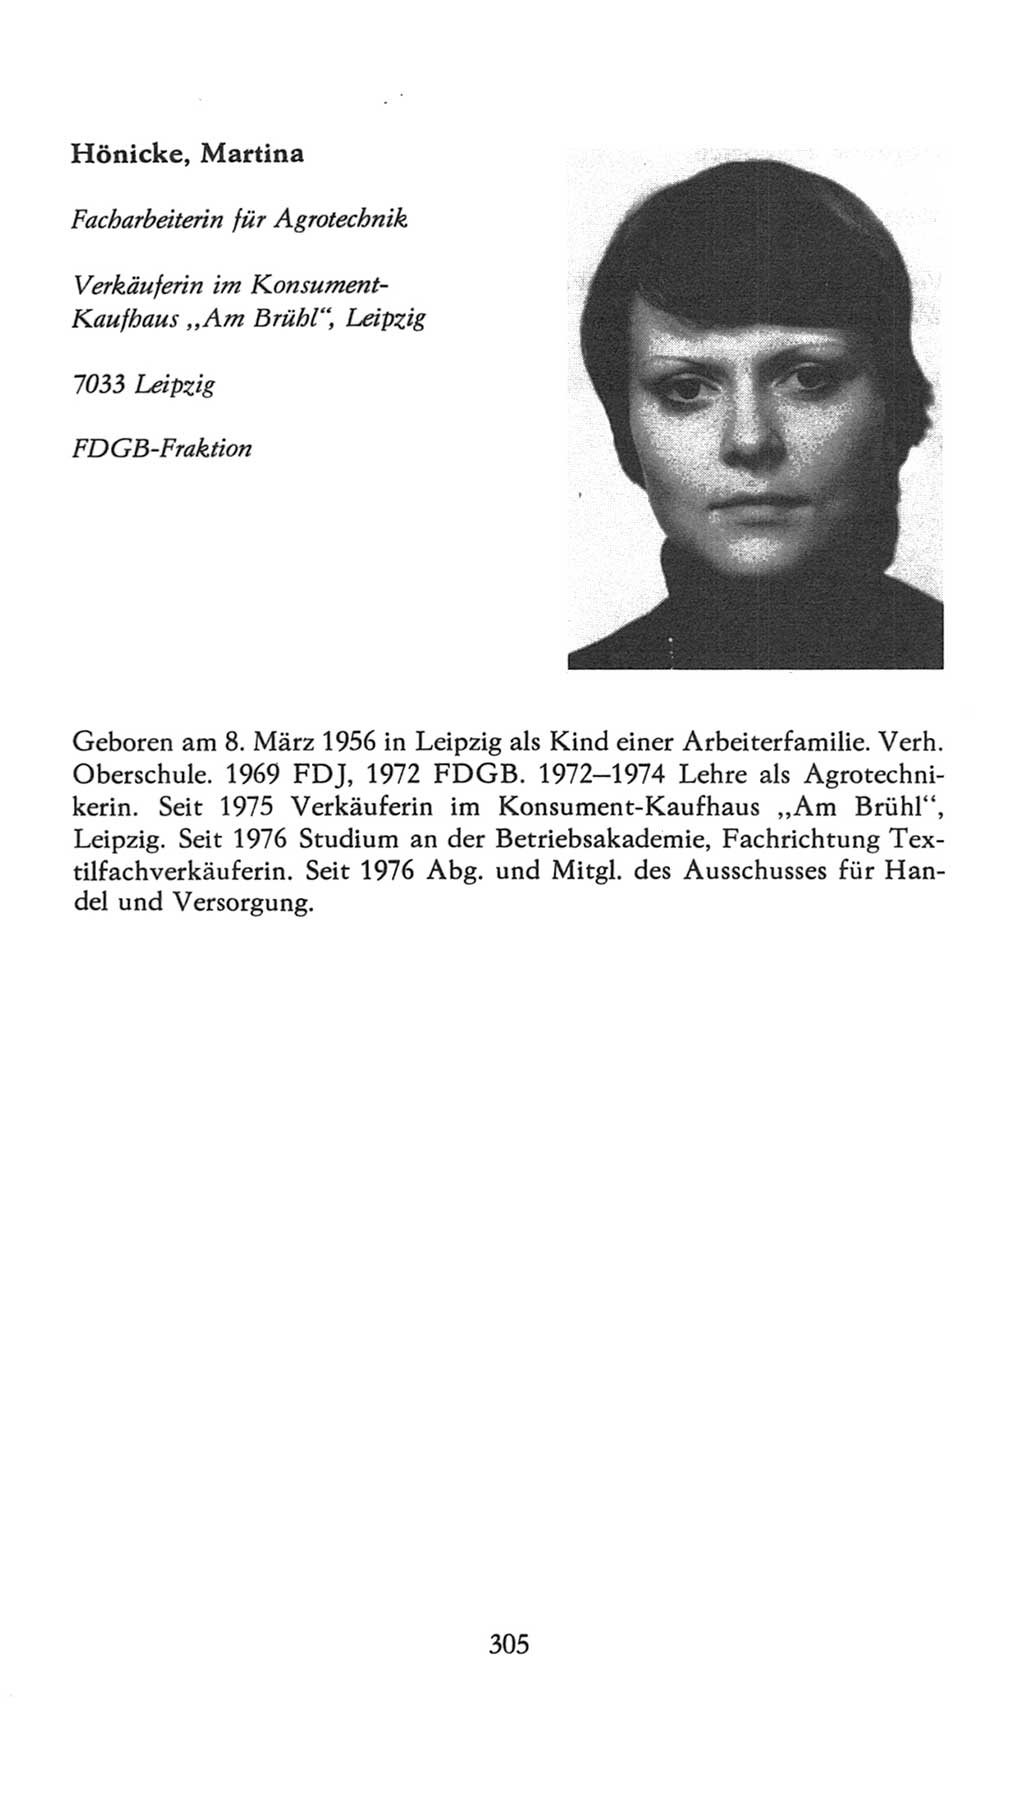 Volkskammer (VK) der Deutschen Demokratischen Republik (DDR), 7. Wahlperiode 1976-1981, Seite 305 (VK. DDR 7. WP. 1976-1981, S. 305)